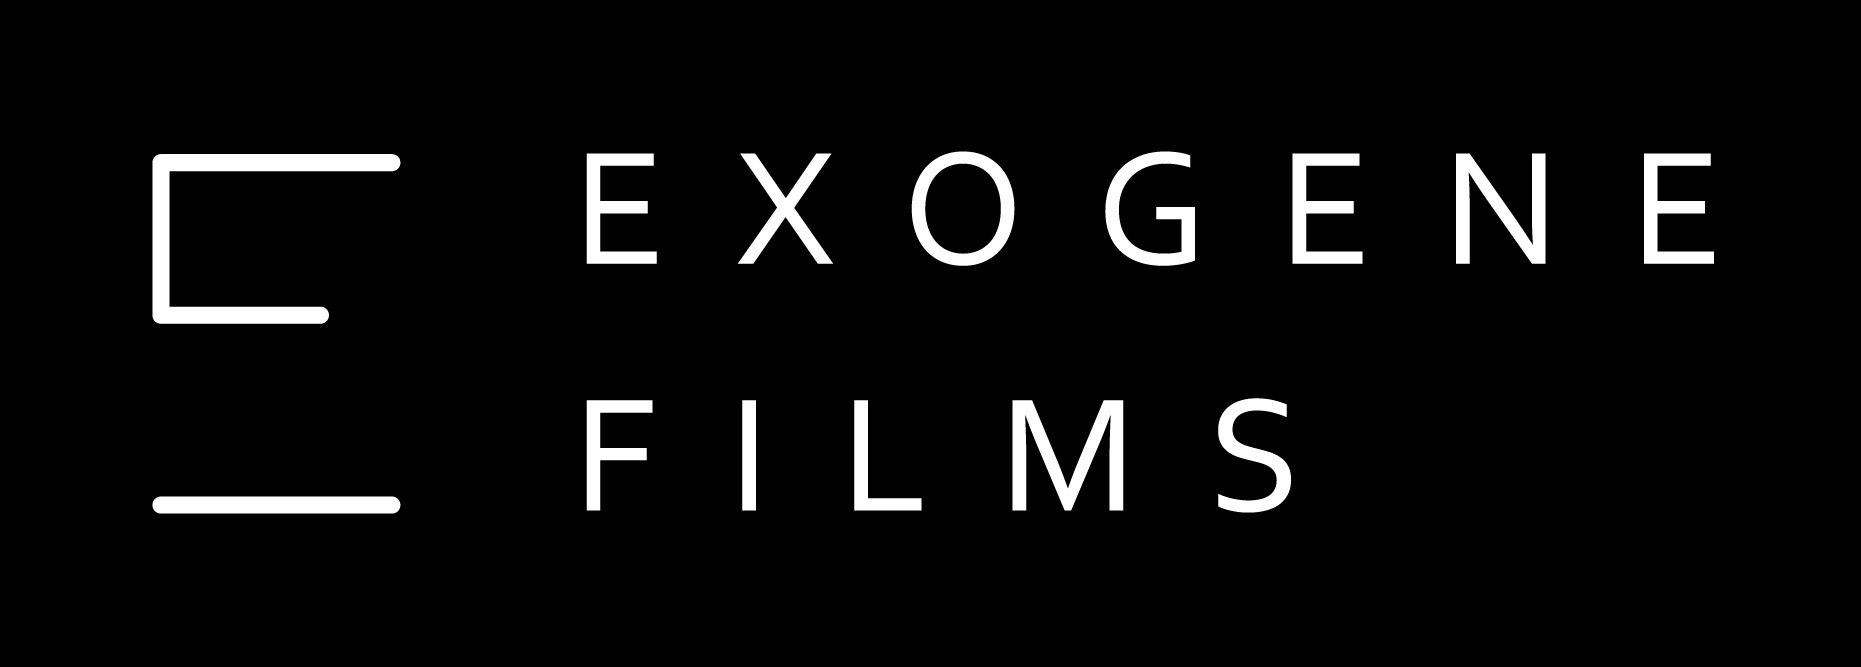 Exogène Films logo